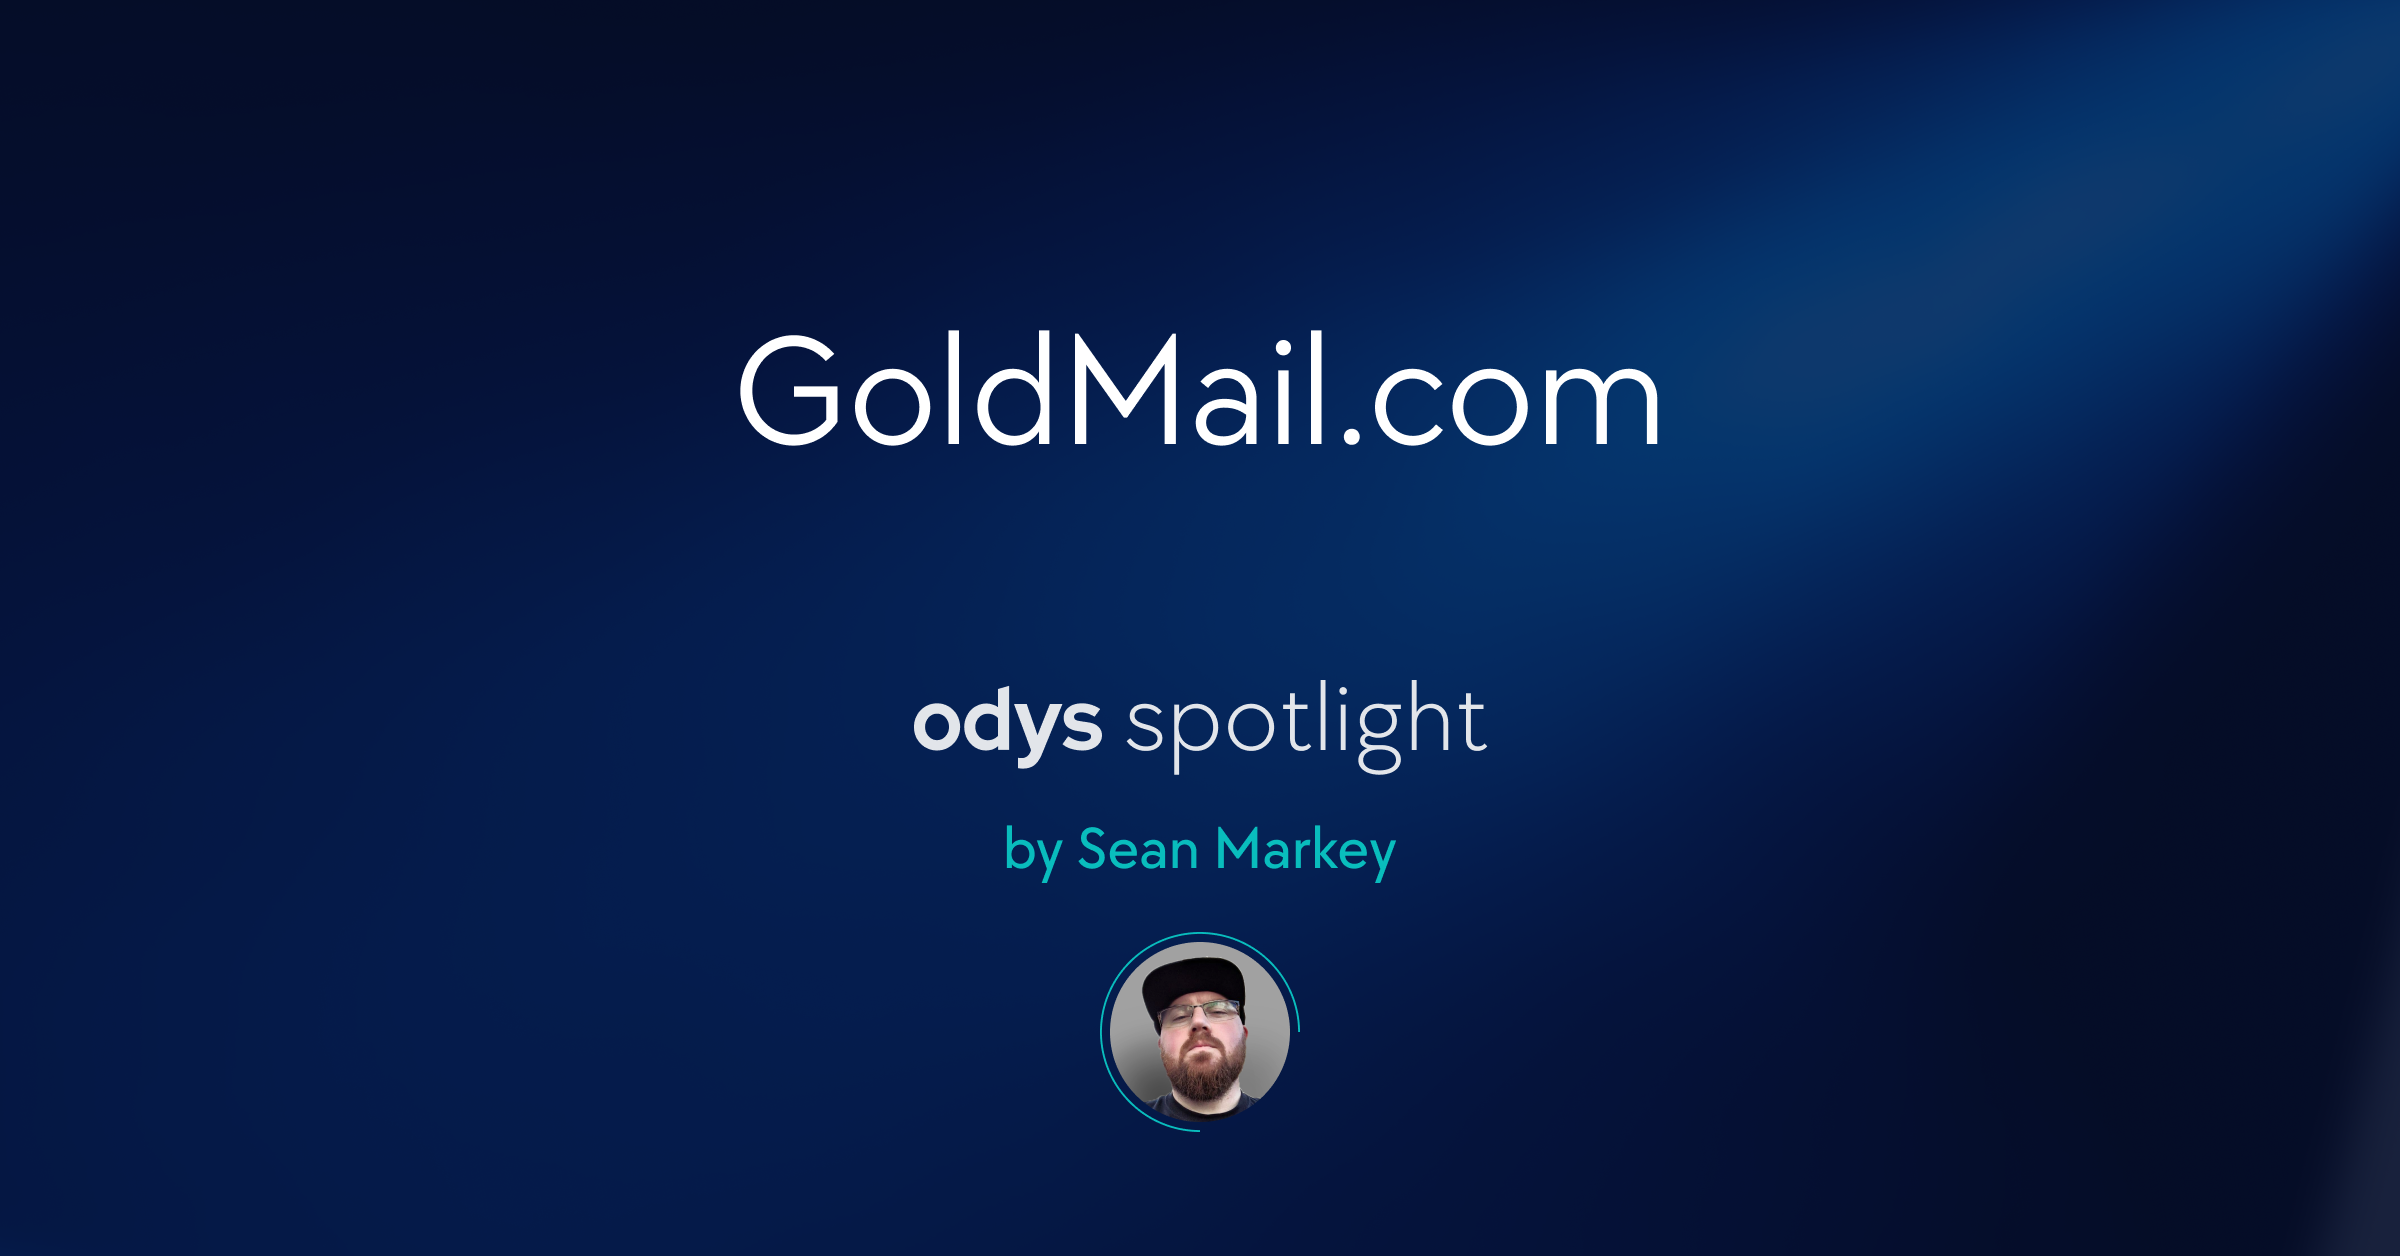 GoldMail.com spotlight